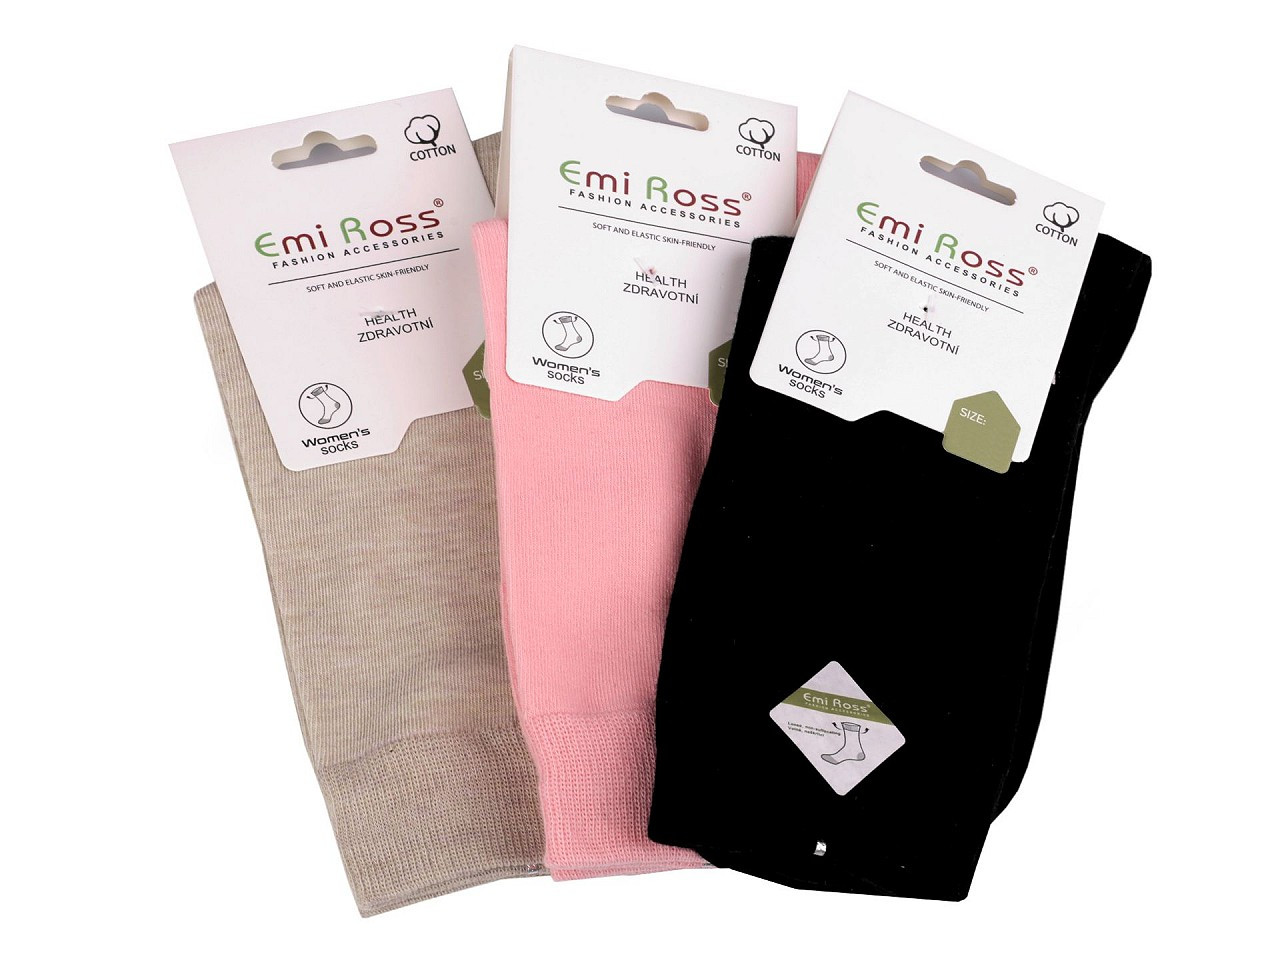 Dámské bavlněné ponožky Emi Ross, barva 8 (vel. 35-38) mix